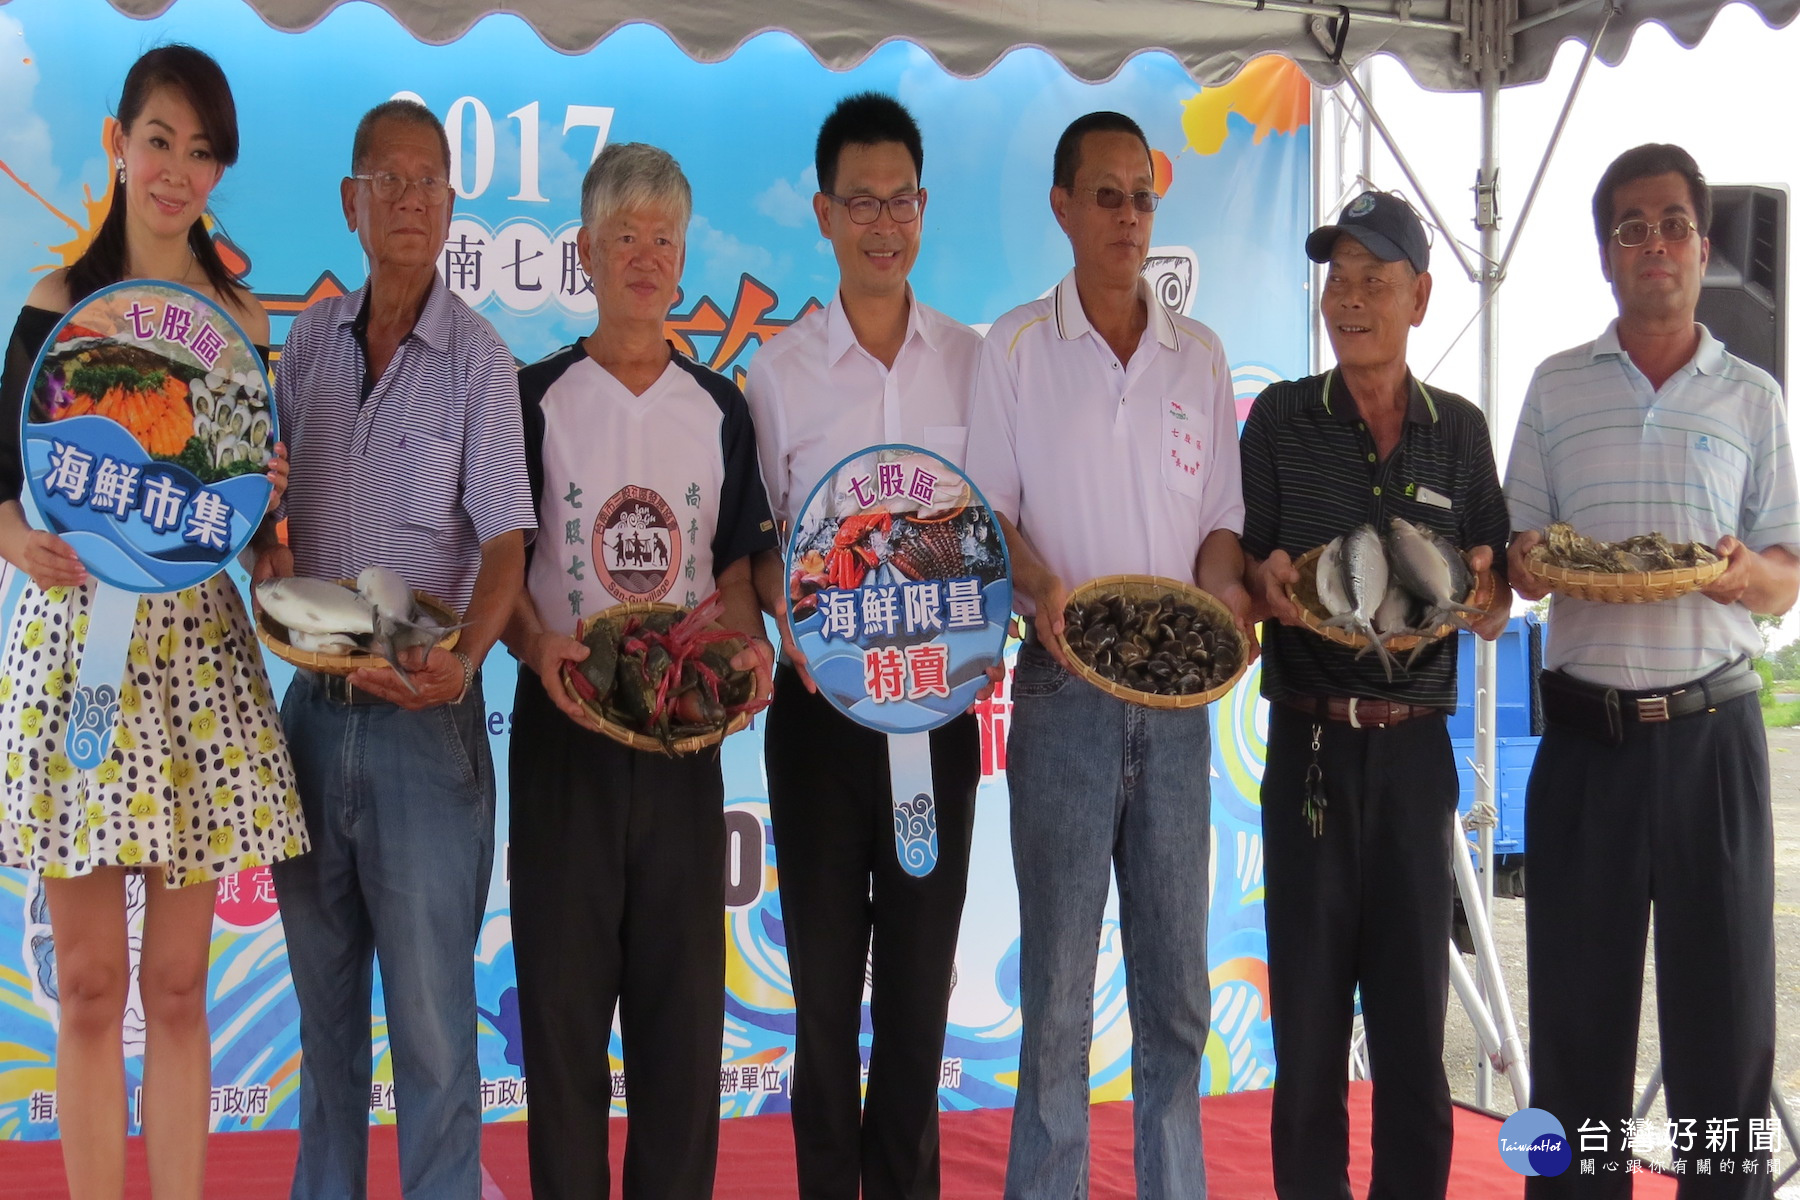 七股區區長莊名豪(左四)和漁民一起發起海產特賣活動。